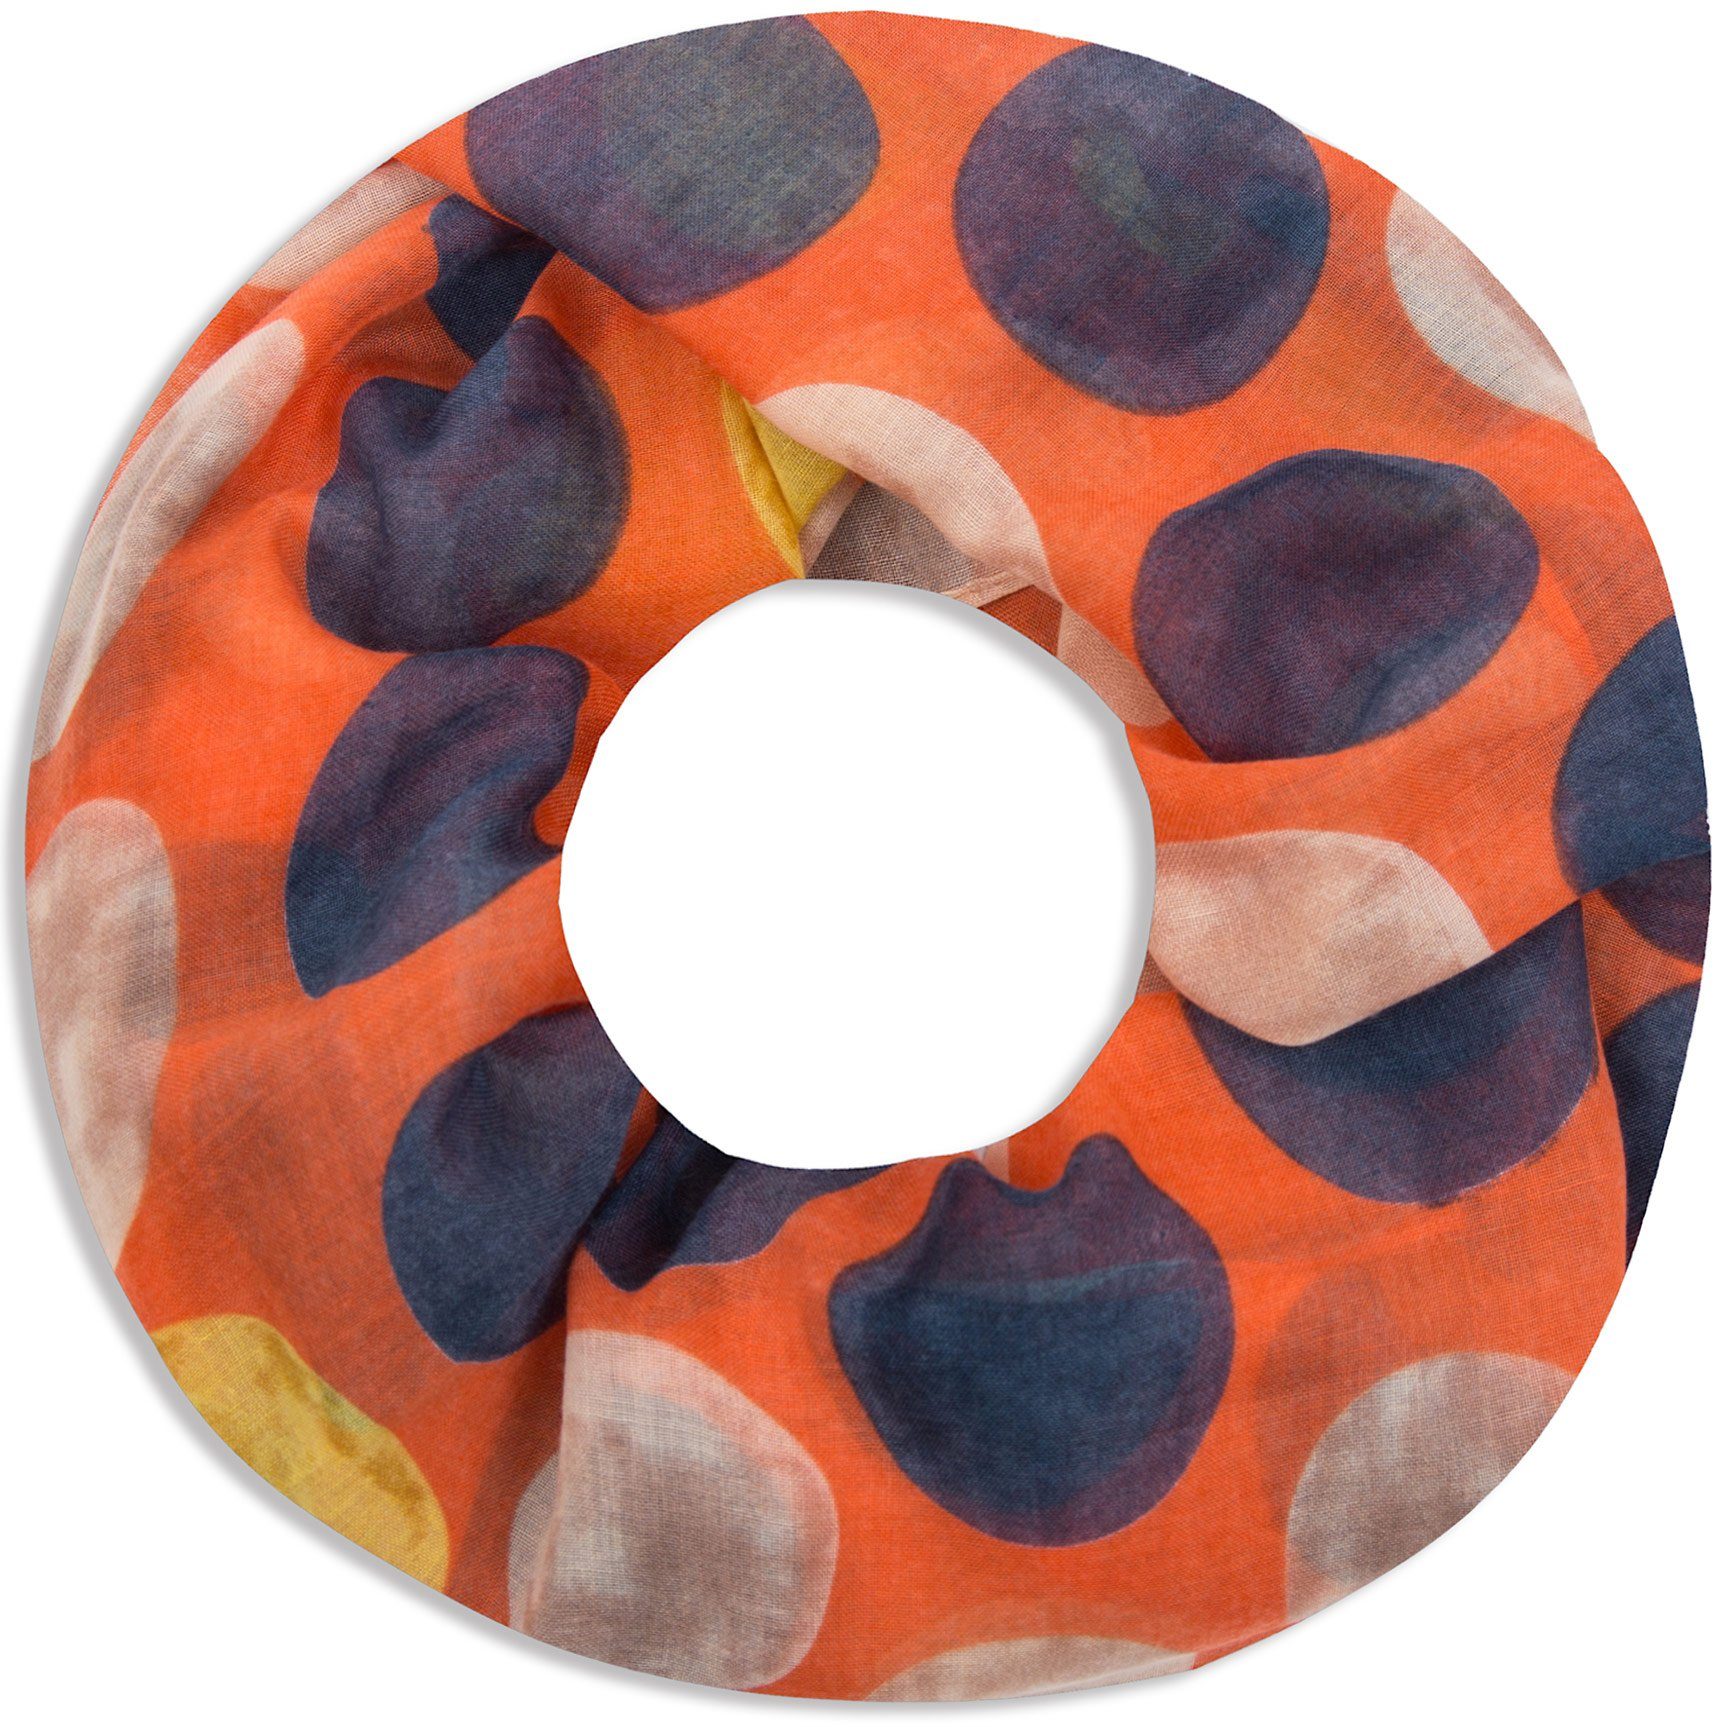 Faera Loop, Damen Schal gepunkteter weicher und leichter Loopschal Rundschal mit großen Punkten orange